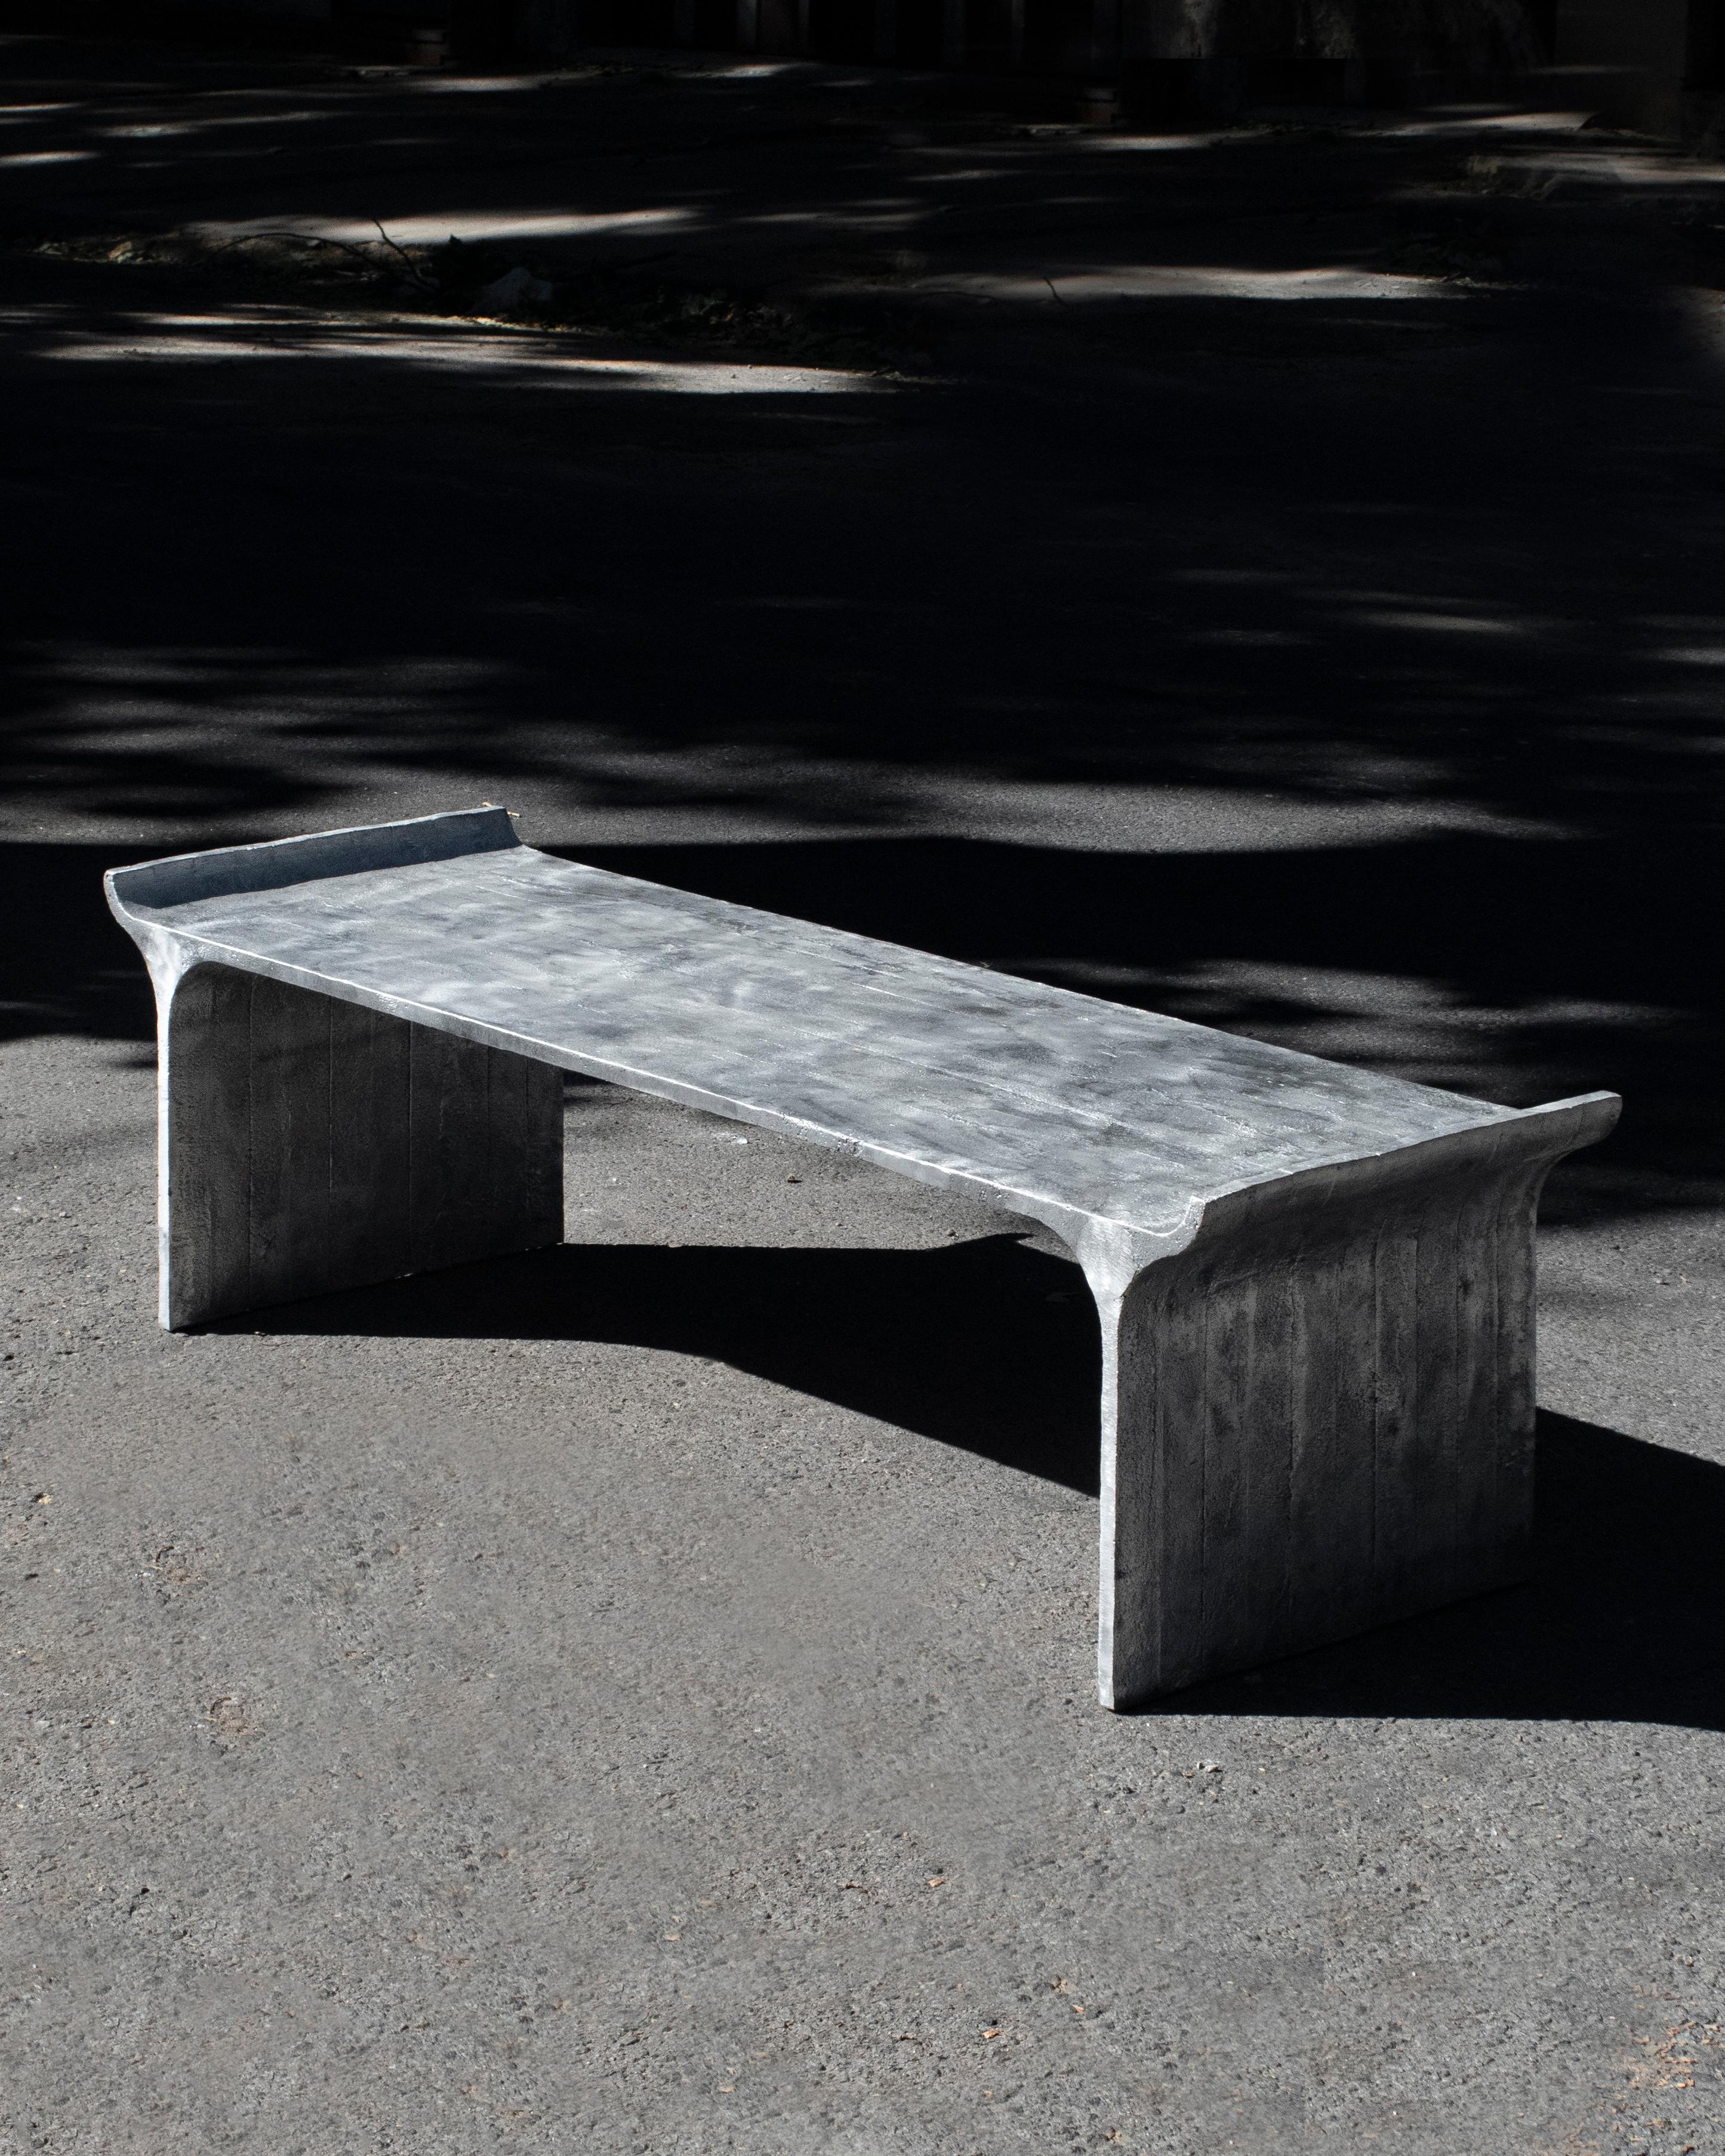 Table basse Tori par Ries
Dimensions : L160 x P440 x H46 cm 
MATERIAL : Aluminium moulé au sable

Ries est un studio de design basé à Buenos Aires, en Argentine, qui se consacre à la conception de produits et de meubles contemporains. L'approche du